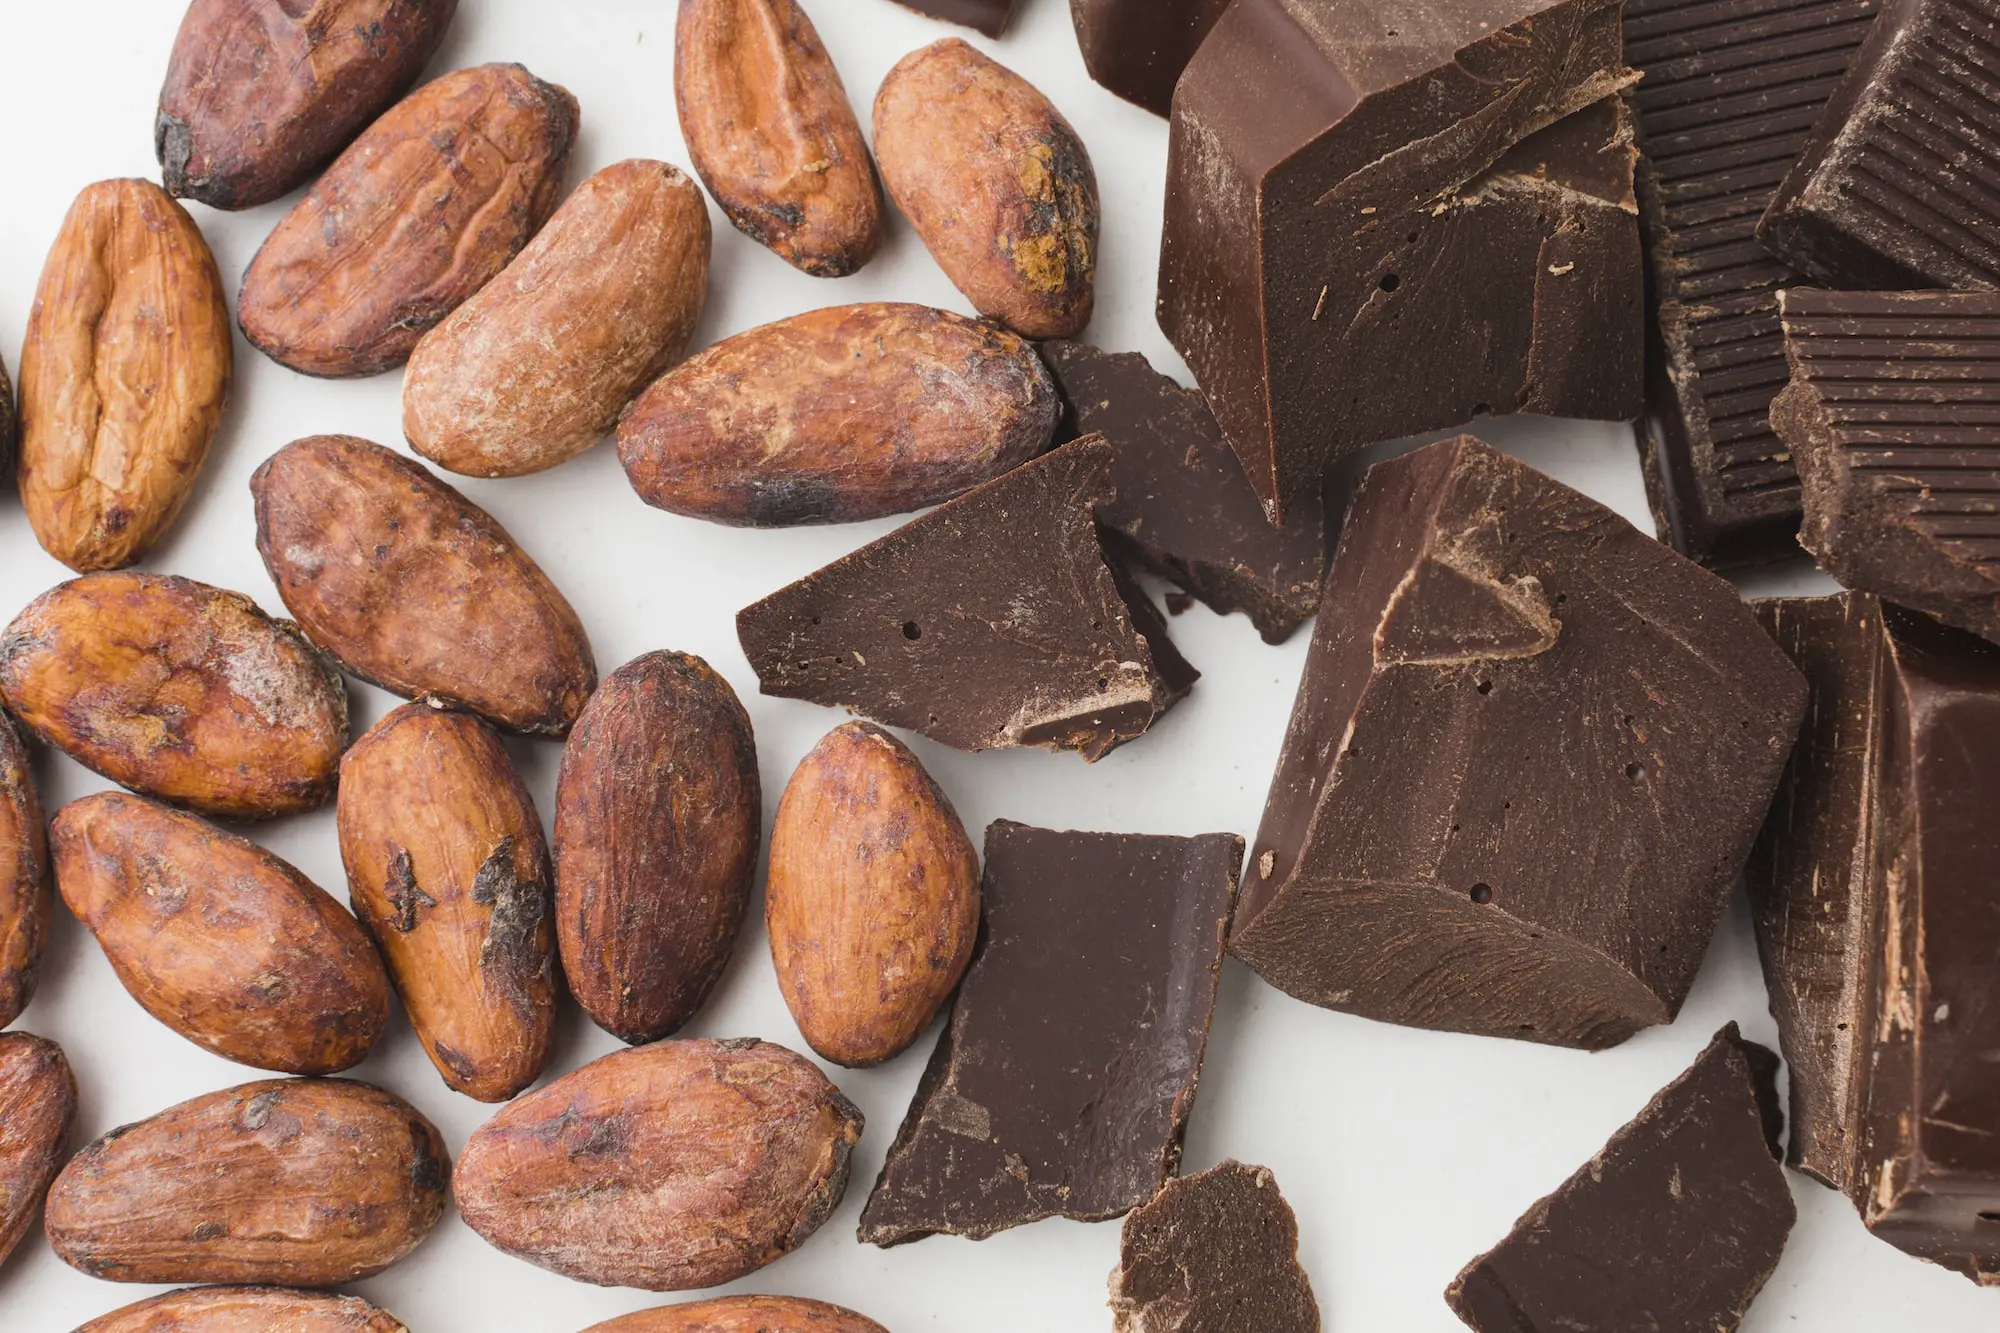 Image de morceaux de chocolat noir et de fèves de cacao, symboles de gourmandises et de bienfaits pour la santé